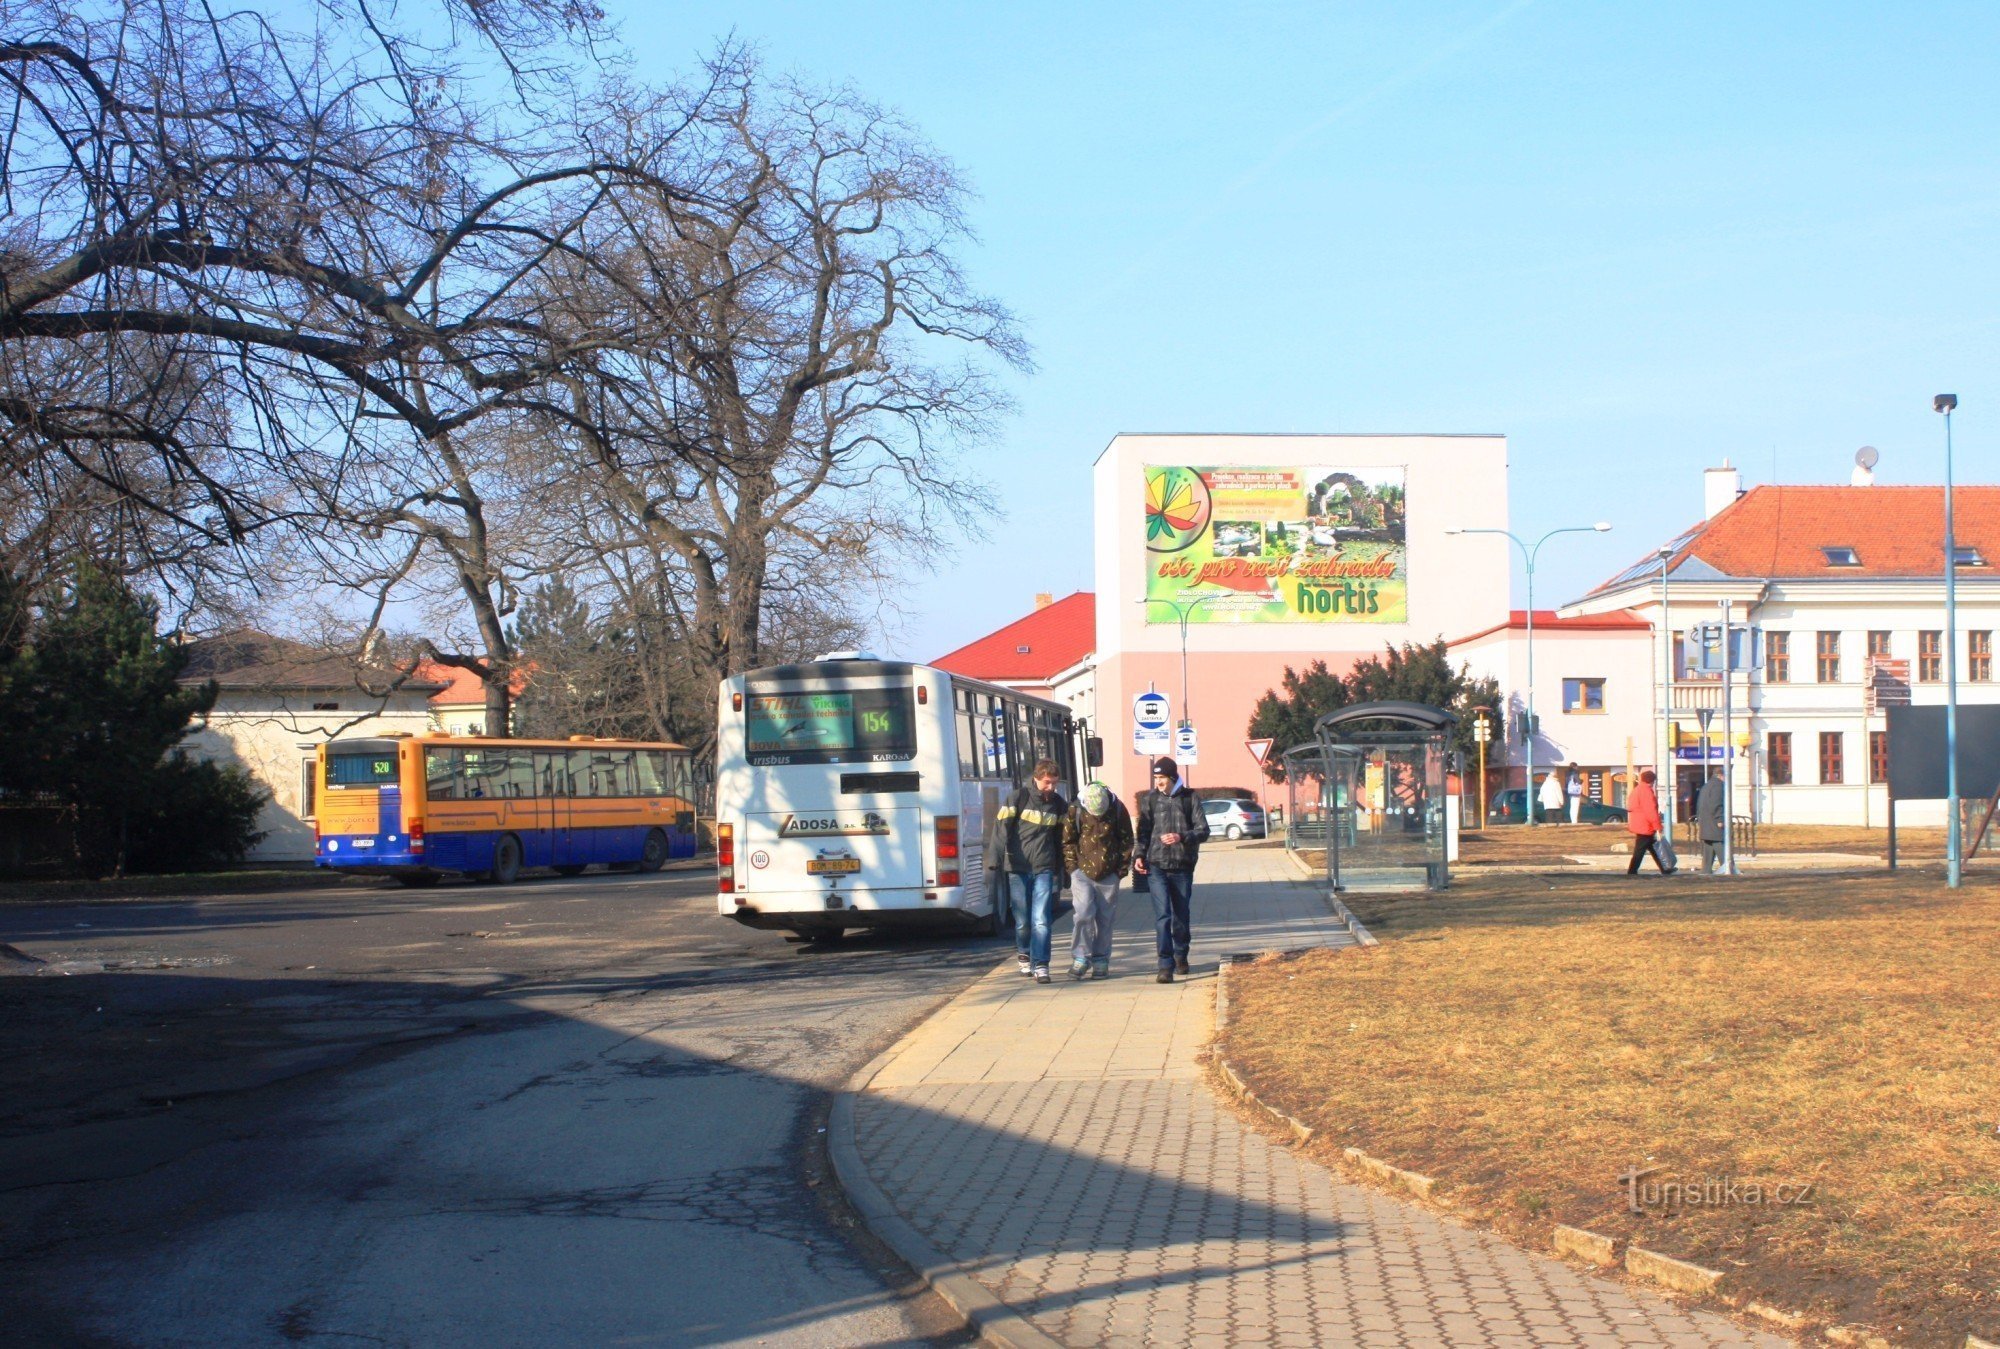 Het busstation ligt aan de rand van het kasteelpark